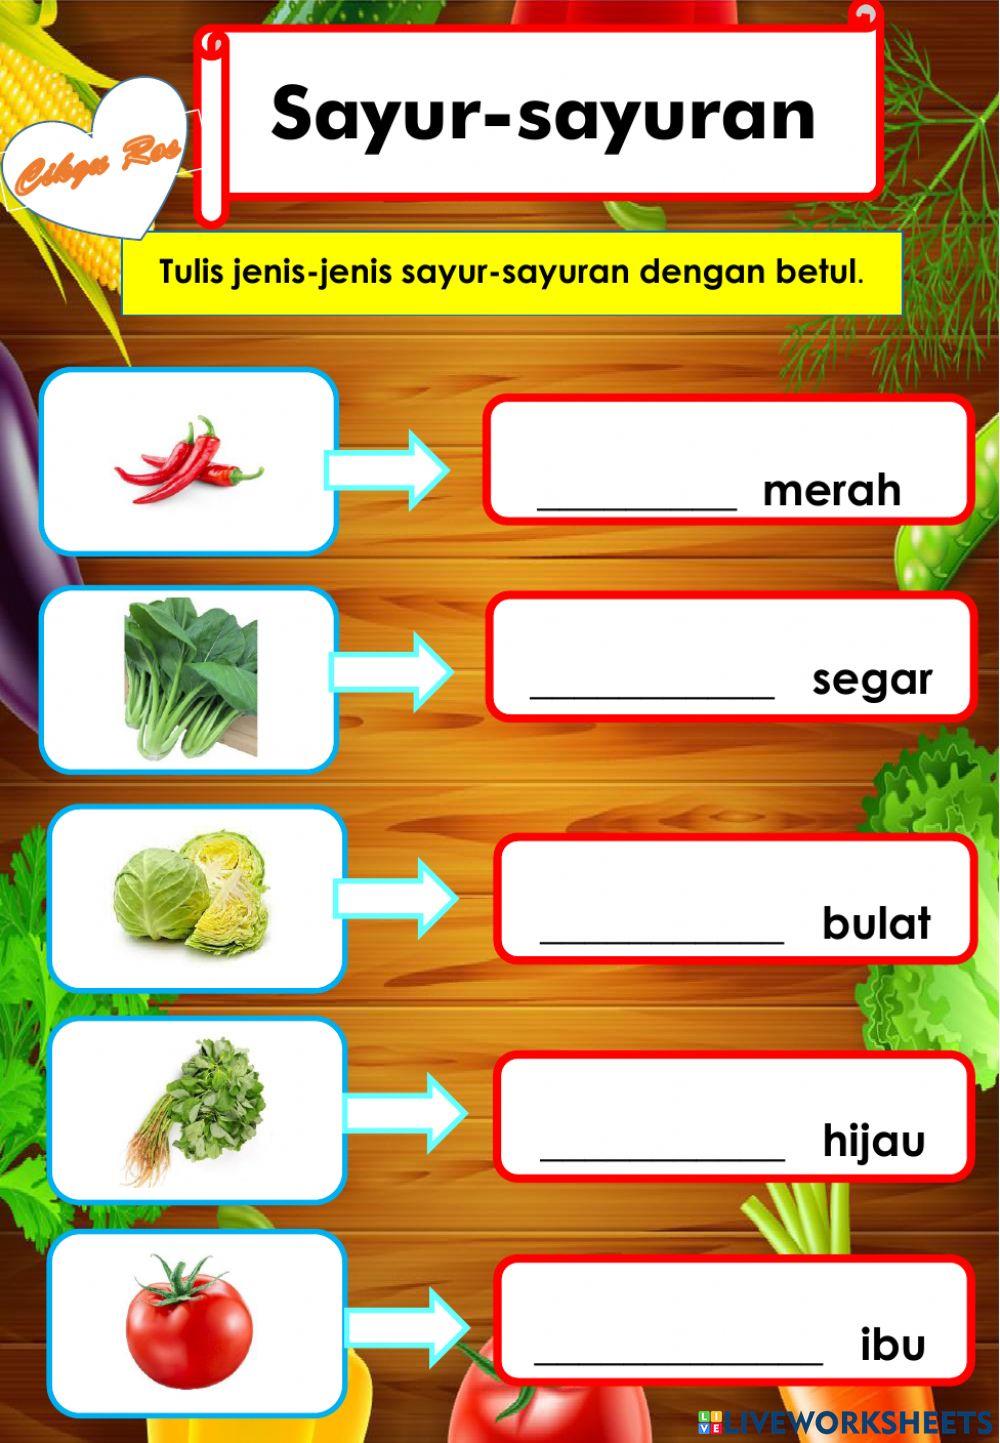 Sayur-sayuran